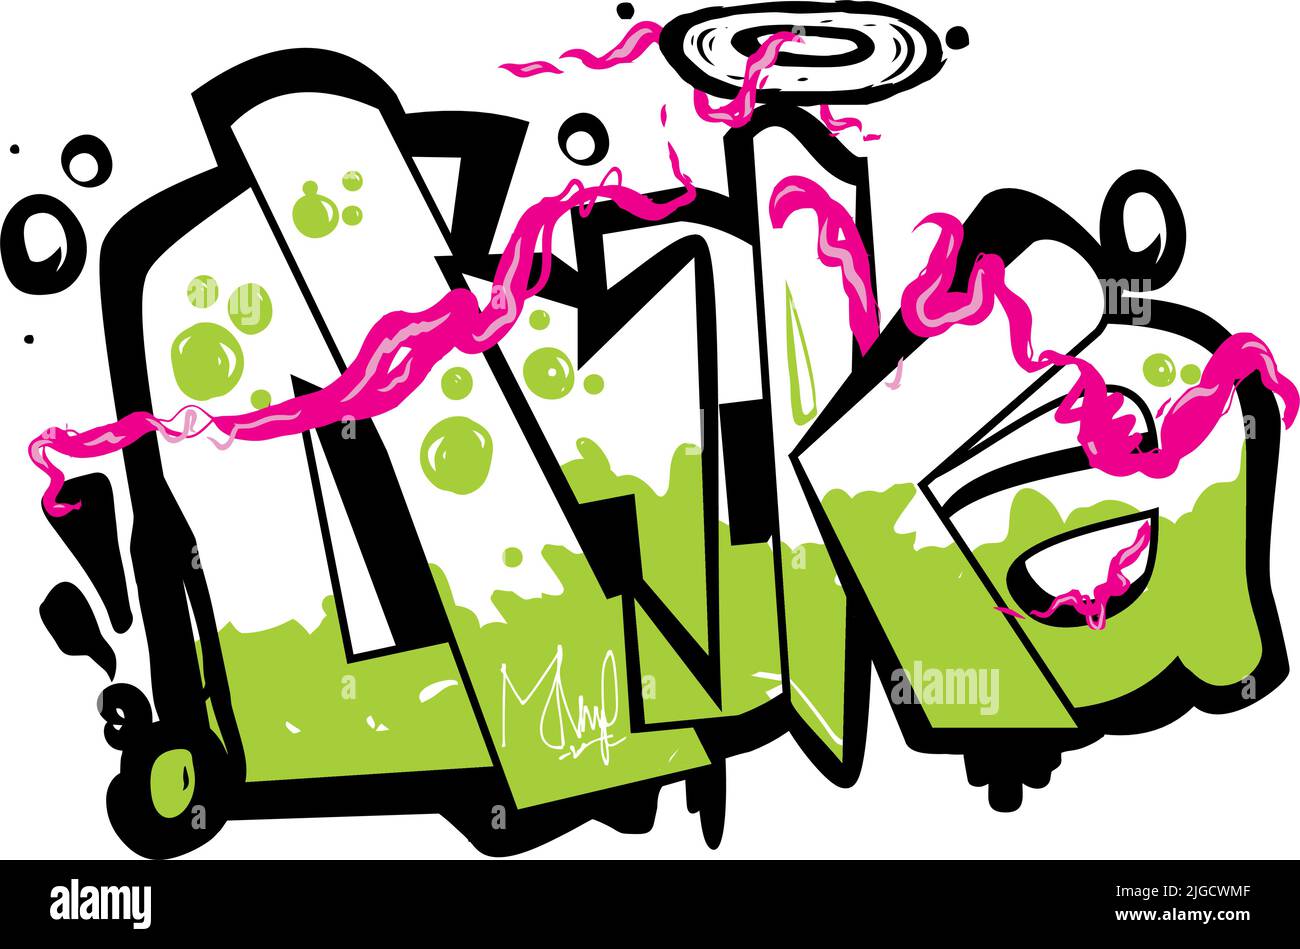 Ein grün und weiß gestalteter Graffiti-Text mit einem rosa Rauch vor dem weißen Hintergrund Stock Vektor